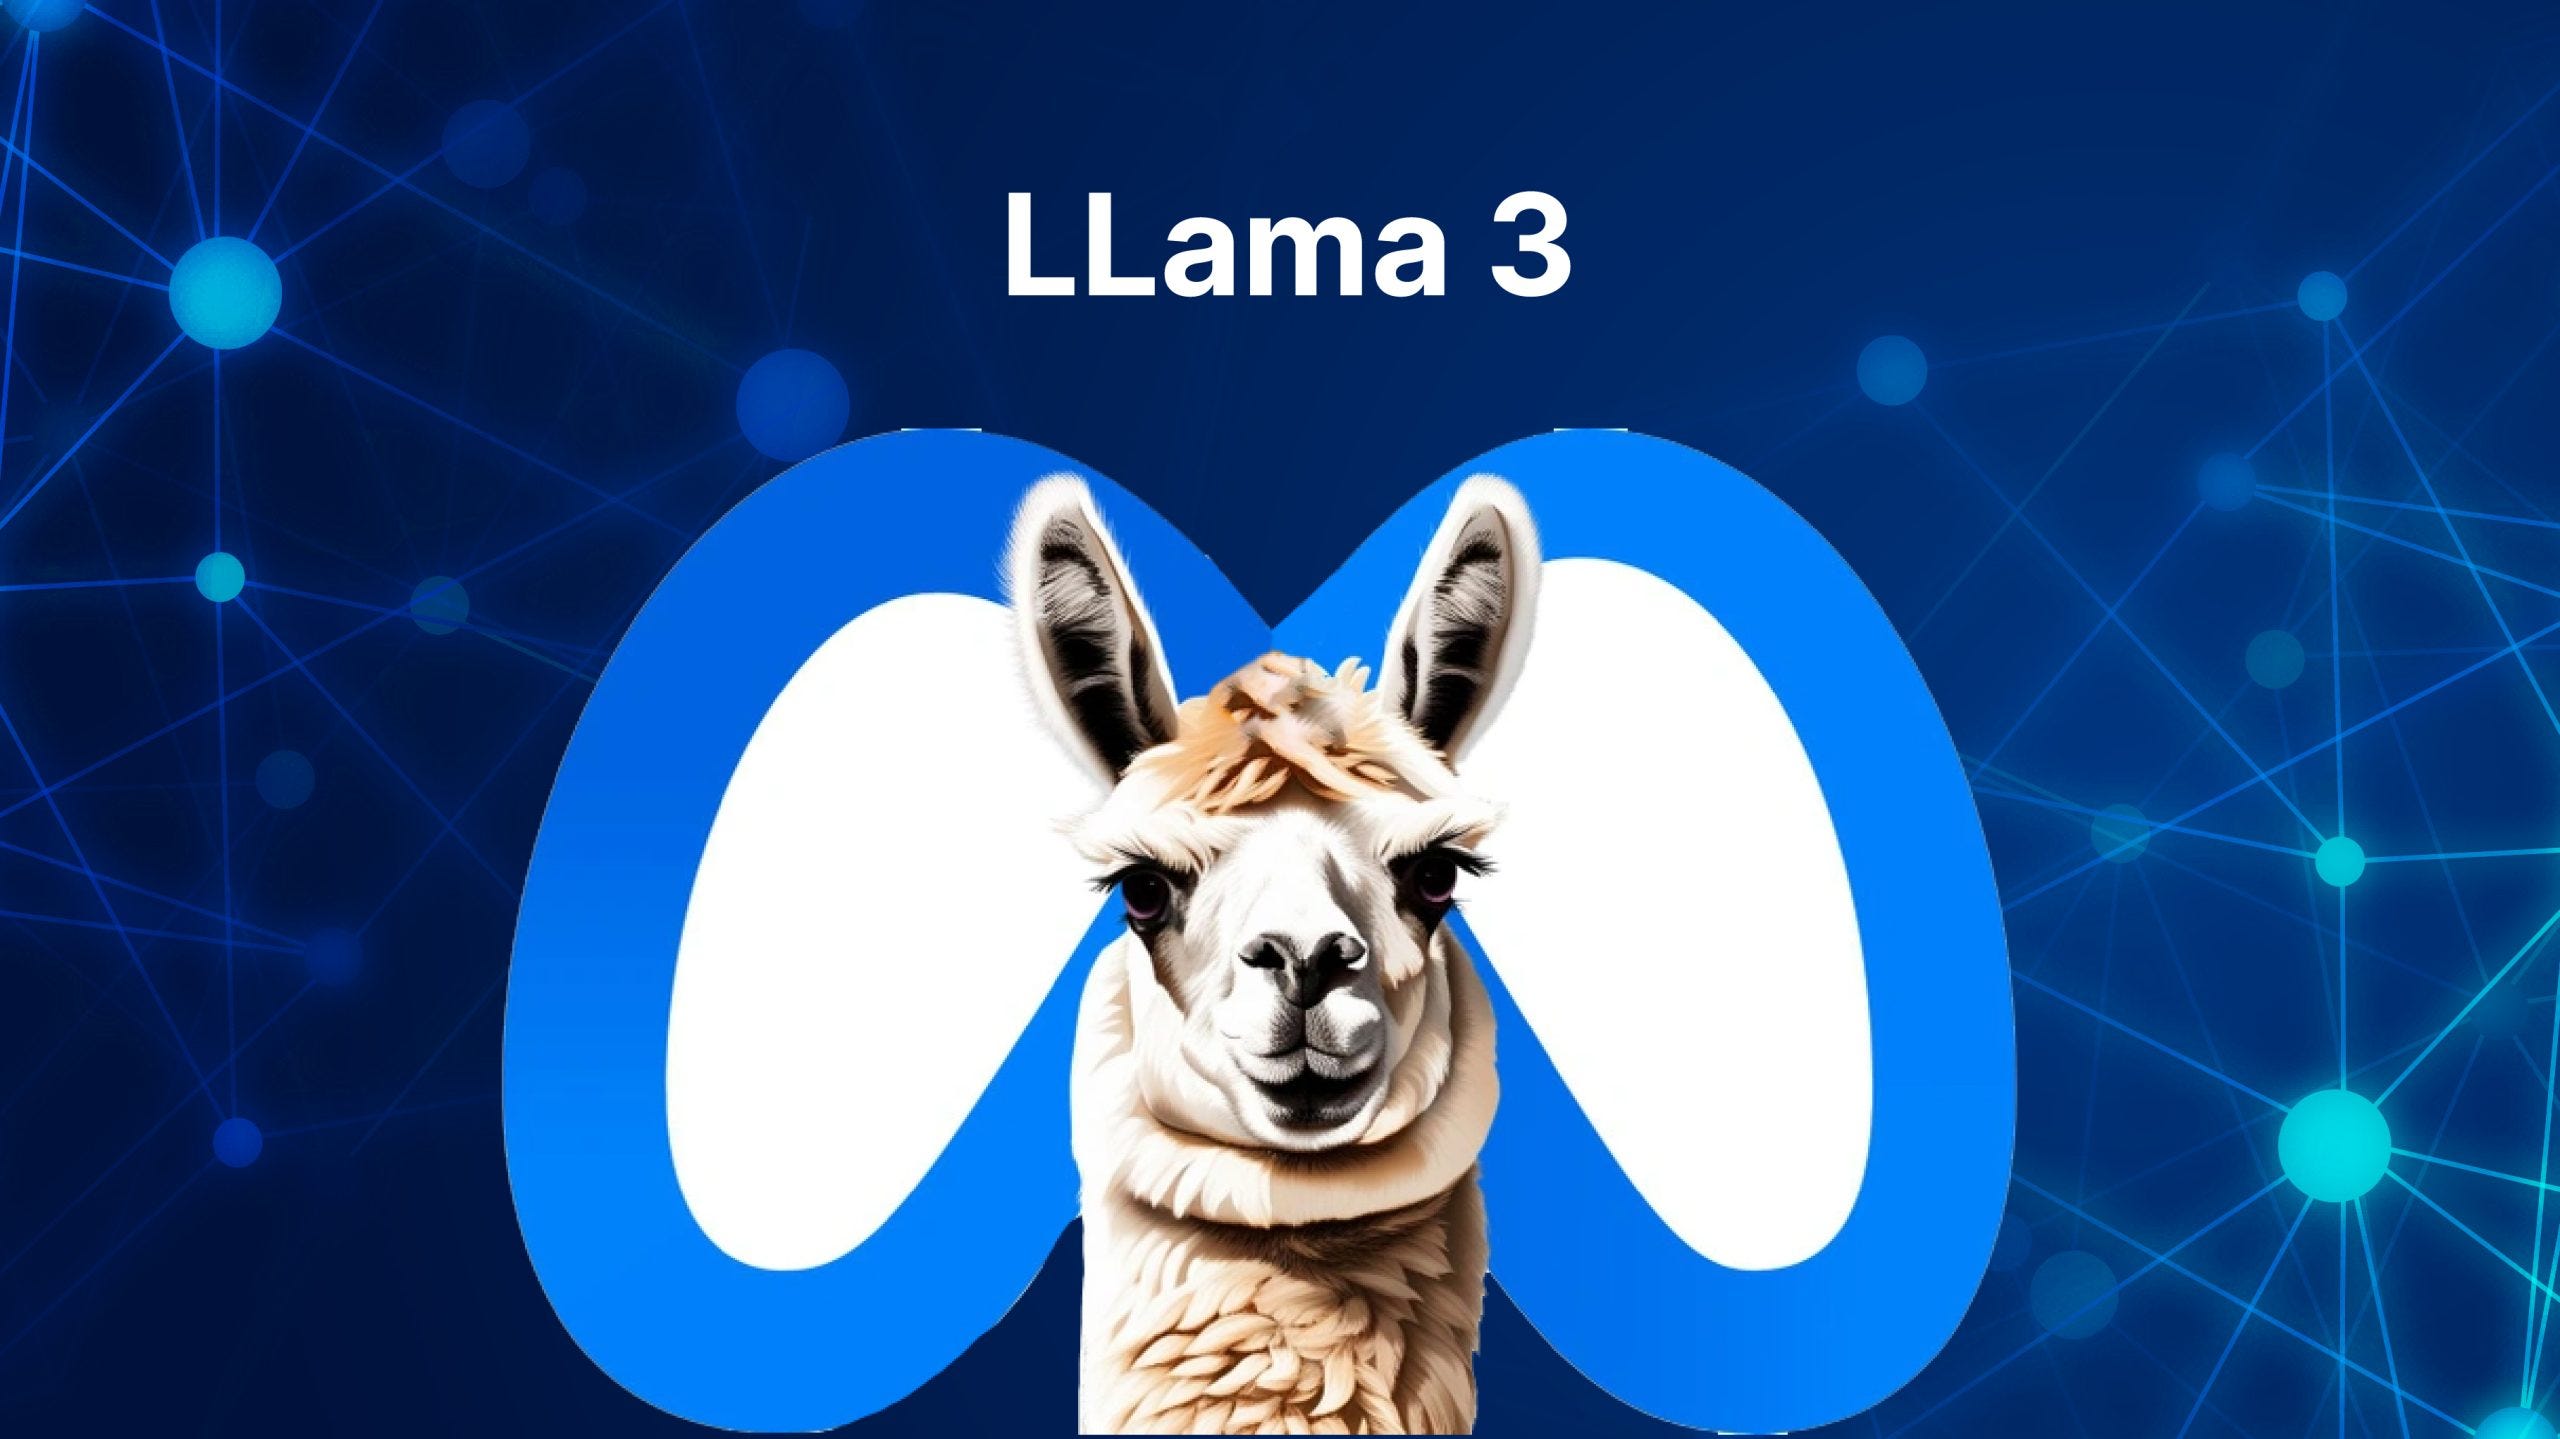 Llama 3 from Meta AI: Revolutionizing AI